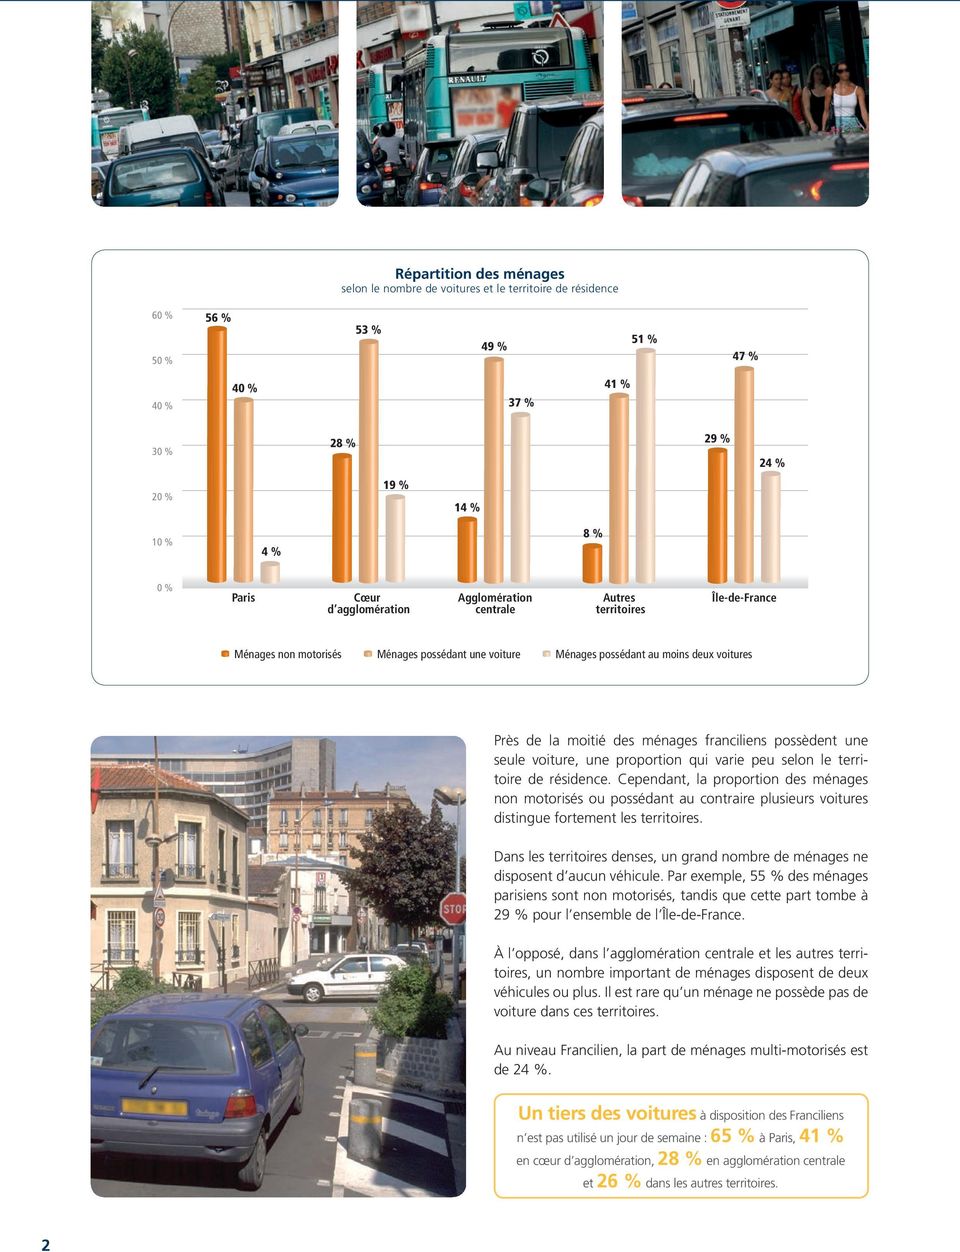 franciliens possèdent une seule voiture, une proportion qui varie peu selon le territoire de résidence.